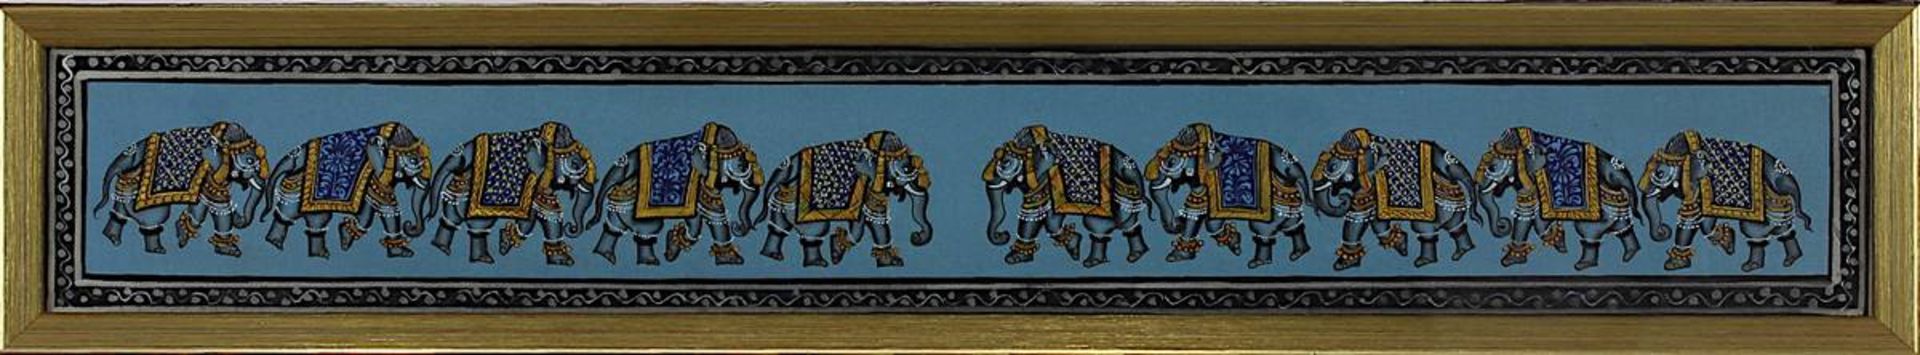 Indischer Künstler 19./20. Jh., zwei Züge mit jeweils fünf Elefanten, gegenläufig angeordnet, - Bild 2 aus 2